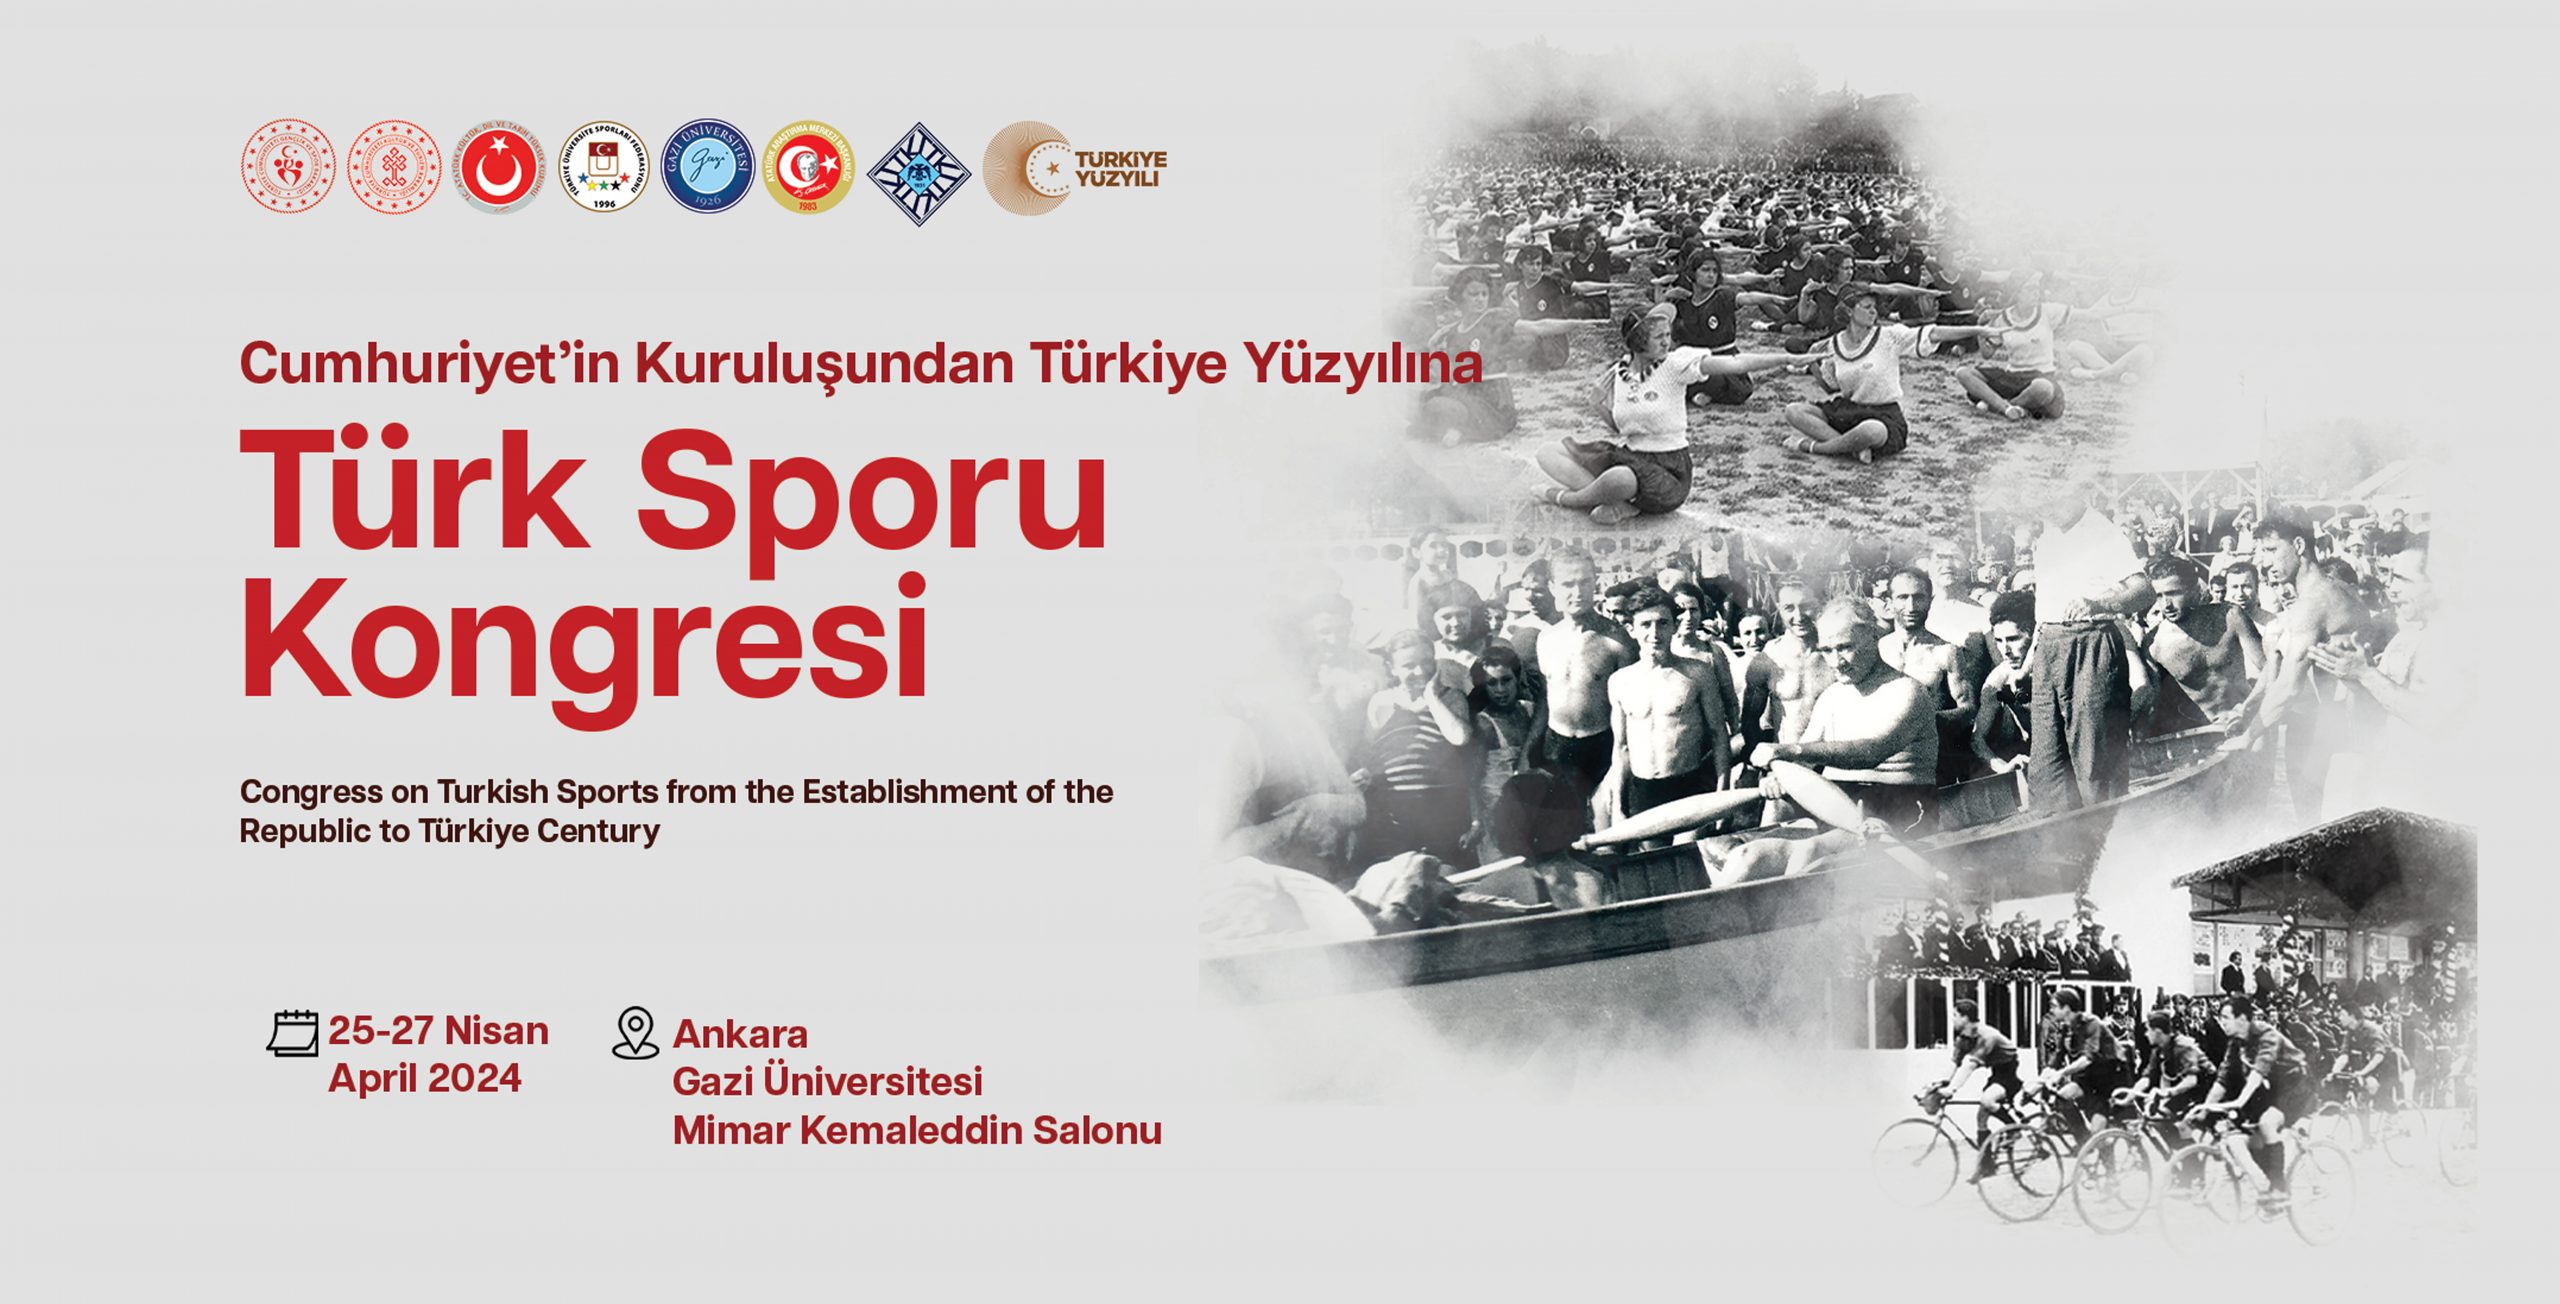 Cumhuriyet’in Kuruluşundan Türkiye Yüzyılına Türk Sporu Kongresi Düzenlenecektir